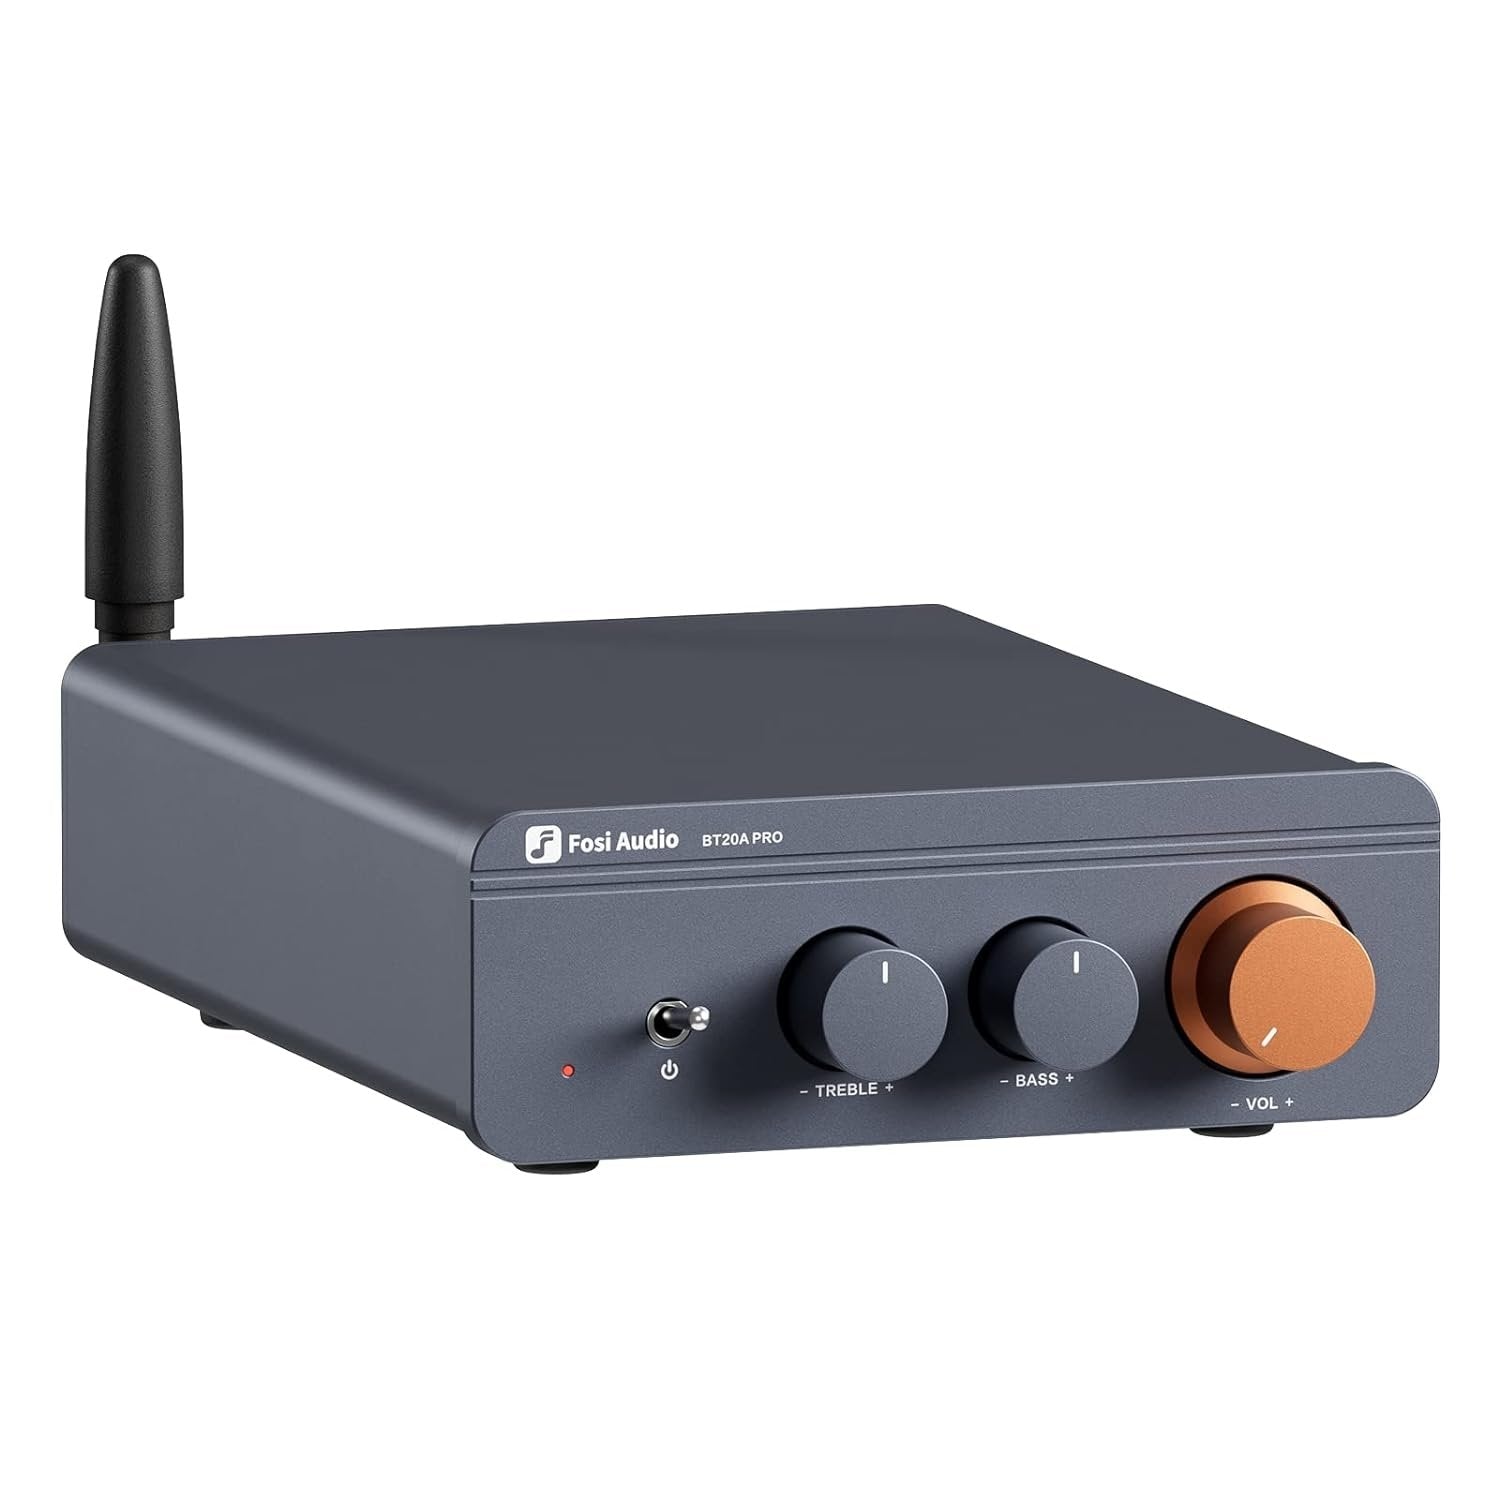 Fosi Audio Bluetooth 5.0 & R/L vahvistin 300W x2 äänenvoimakkuuden basson ja diskantin säädöllä